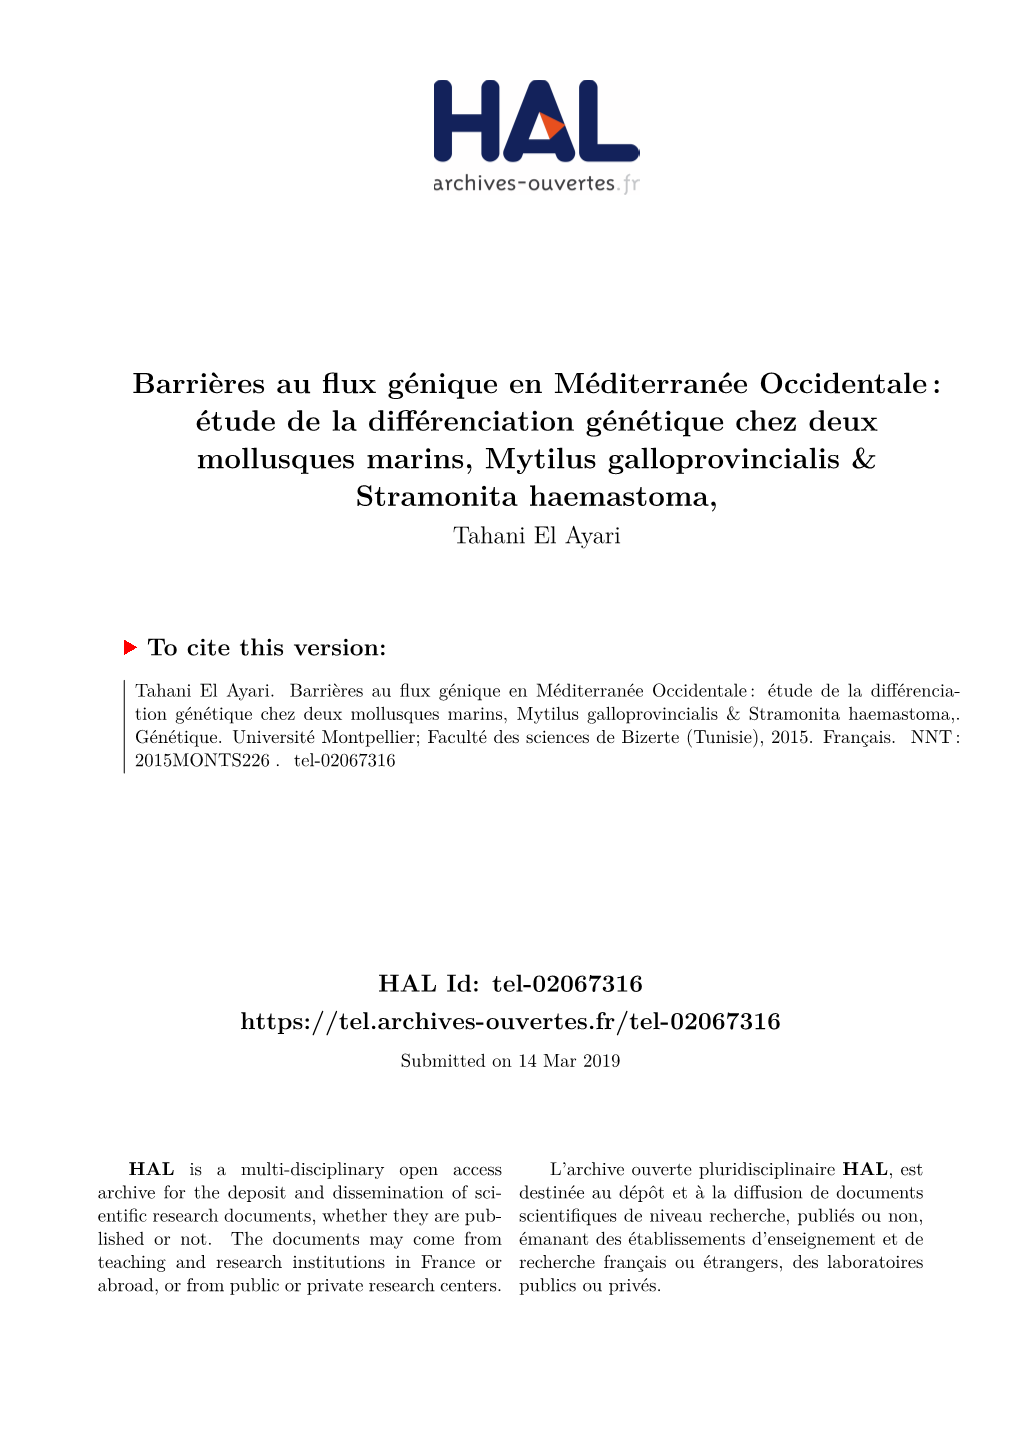 Étude De La Différenciation Génétique Chez Deux Mollusques Marins, Mytilus Galloprovincialis & Stramonita Haemastoma, Tahani El Ayari